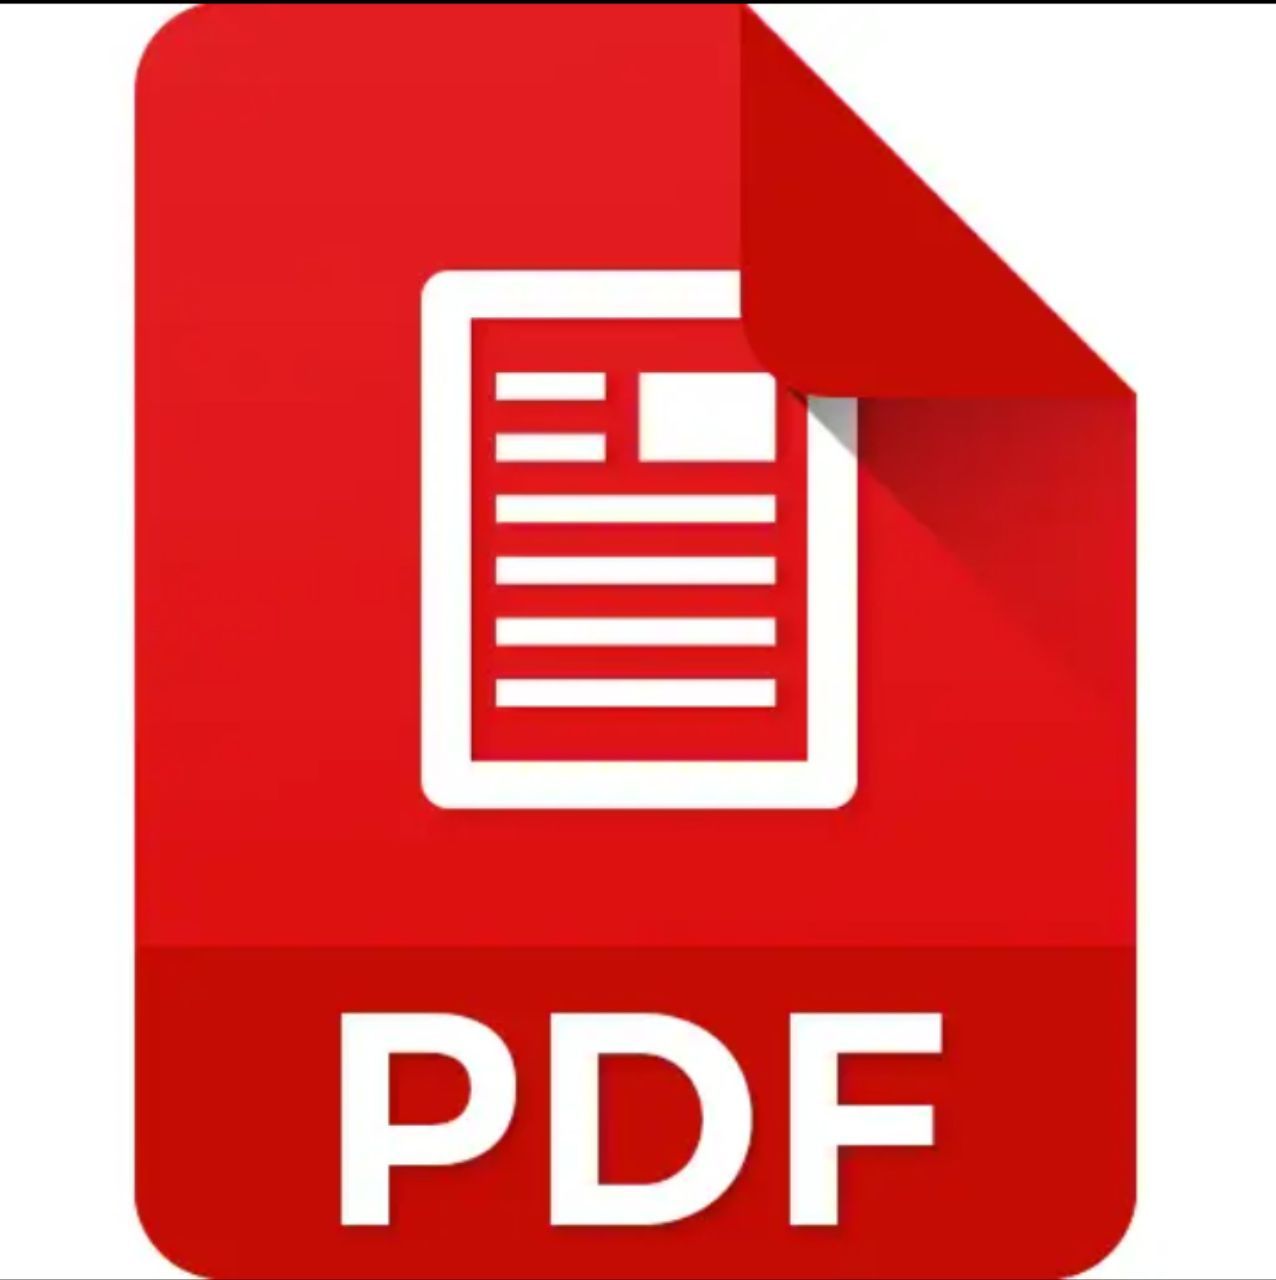 Pdf icon. Pdf. Значок pdf. Иконка pdf файла. Пиктограмма pdf.